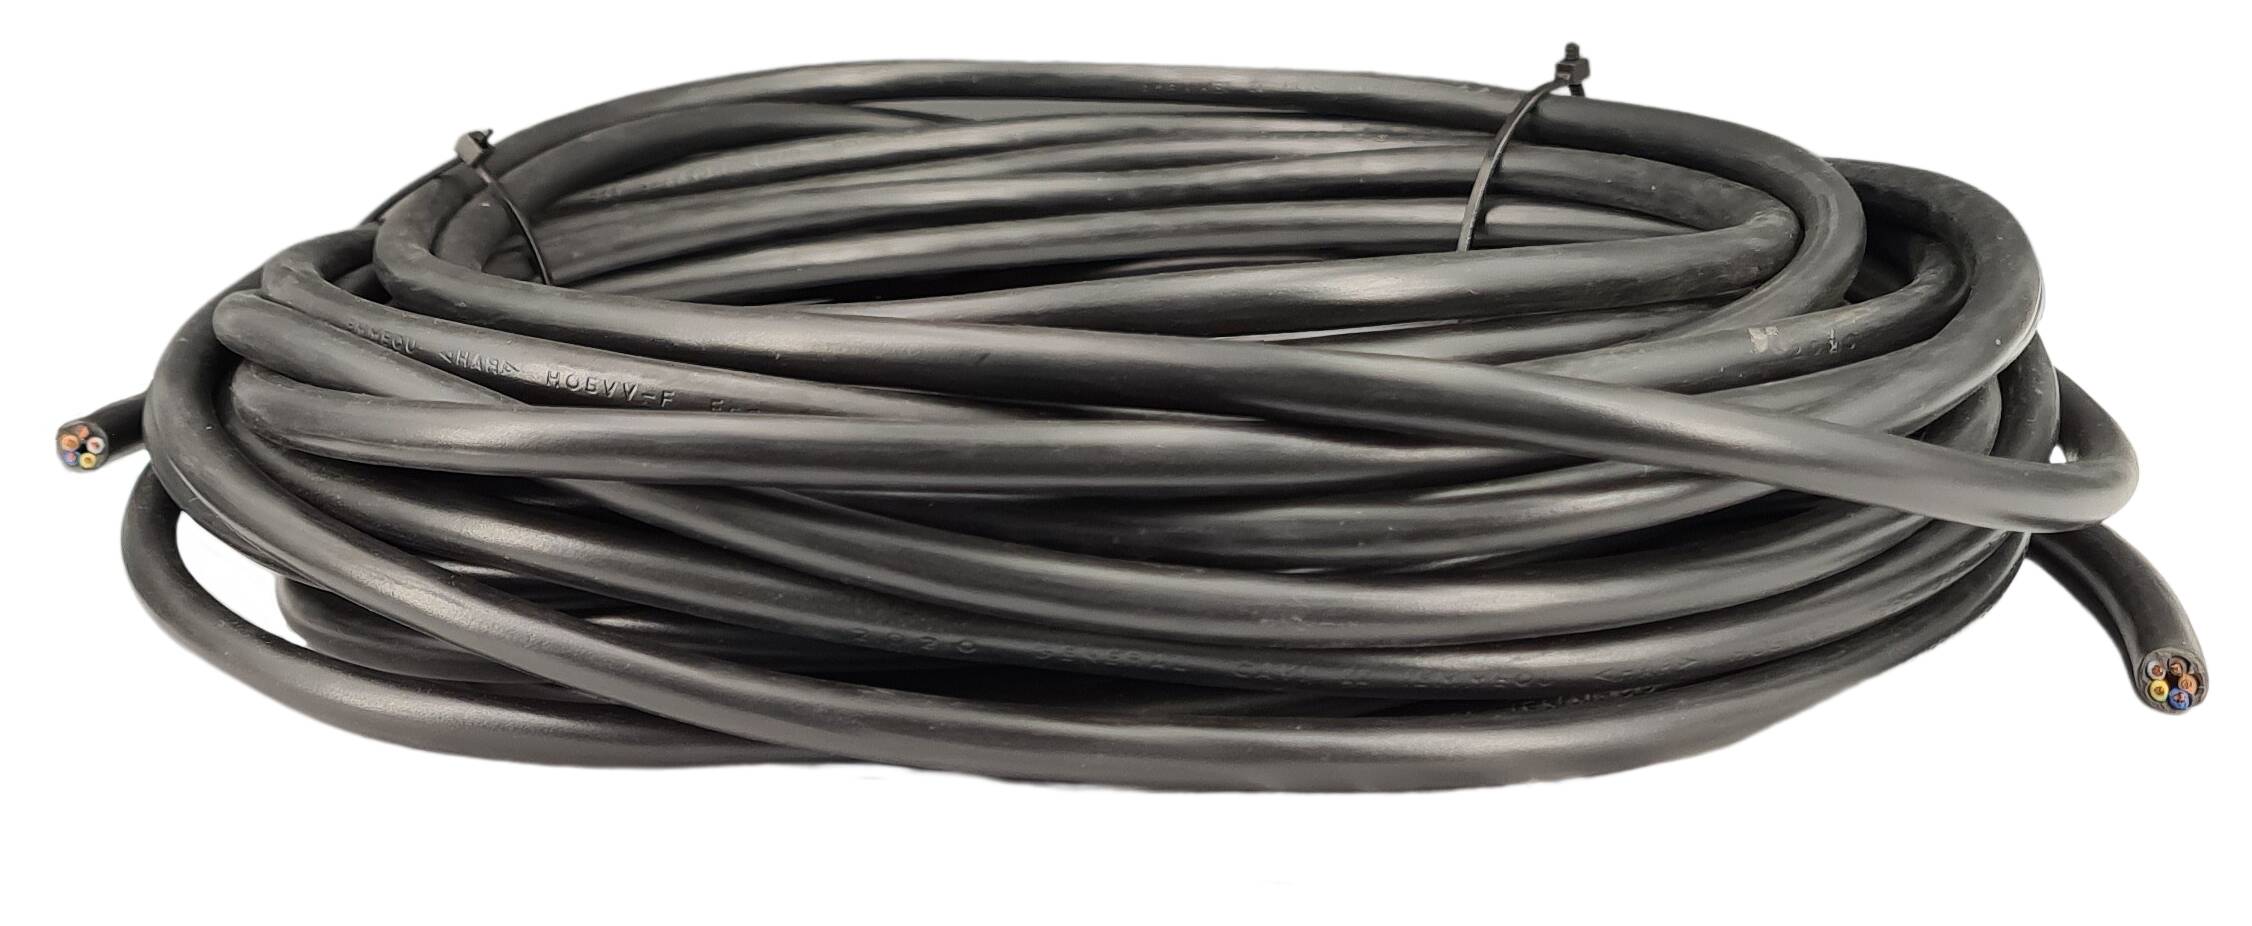 Kabel 5G 0,75 H05VV-F rund schwarz